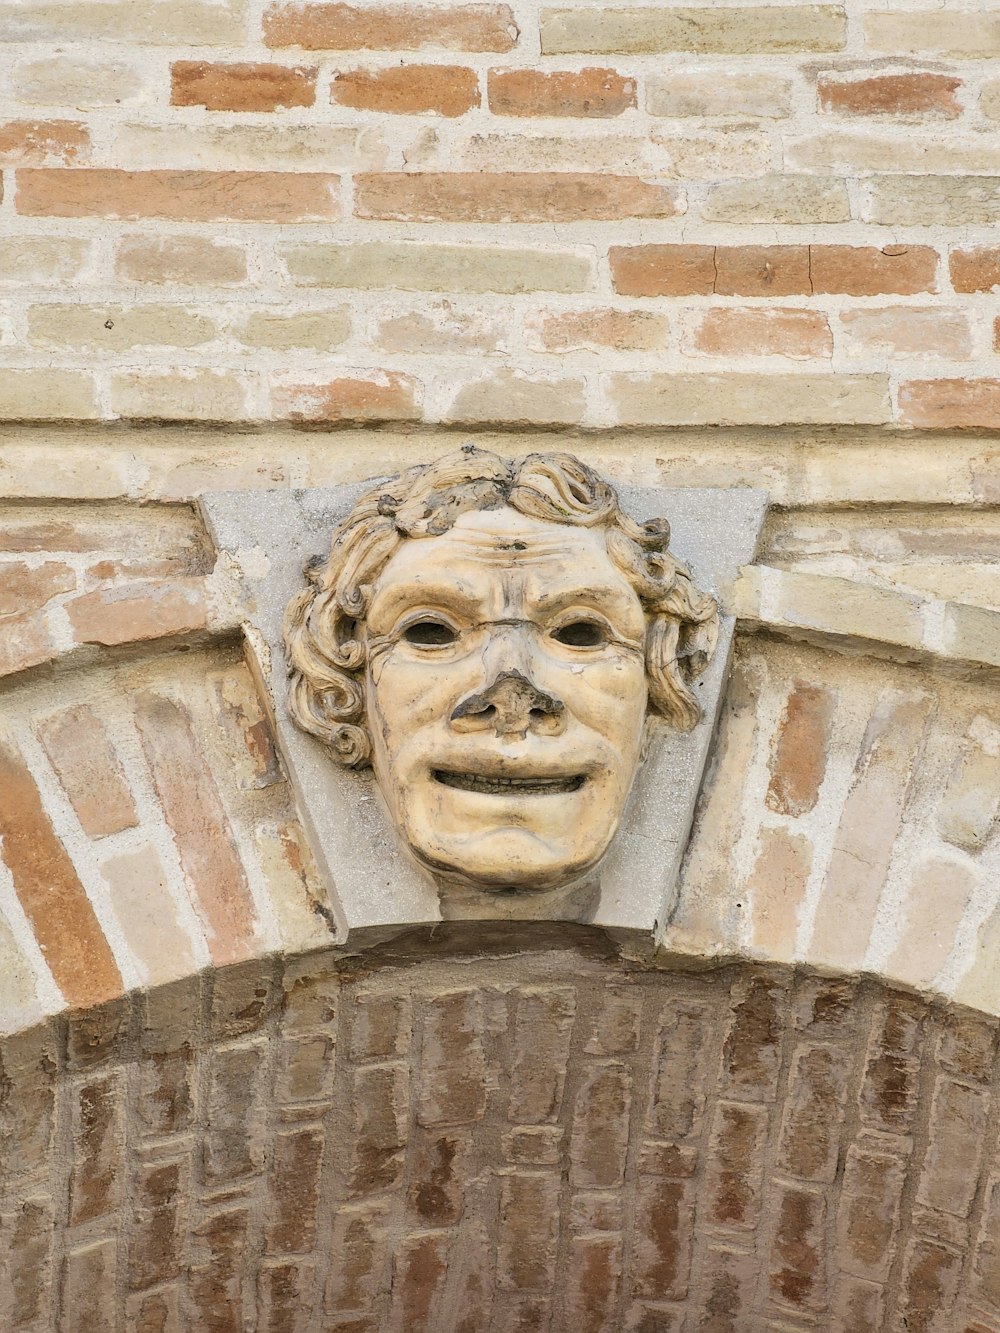 eine Statue des Gesichts eines Mannes auf einer Ziegelmauer